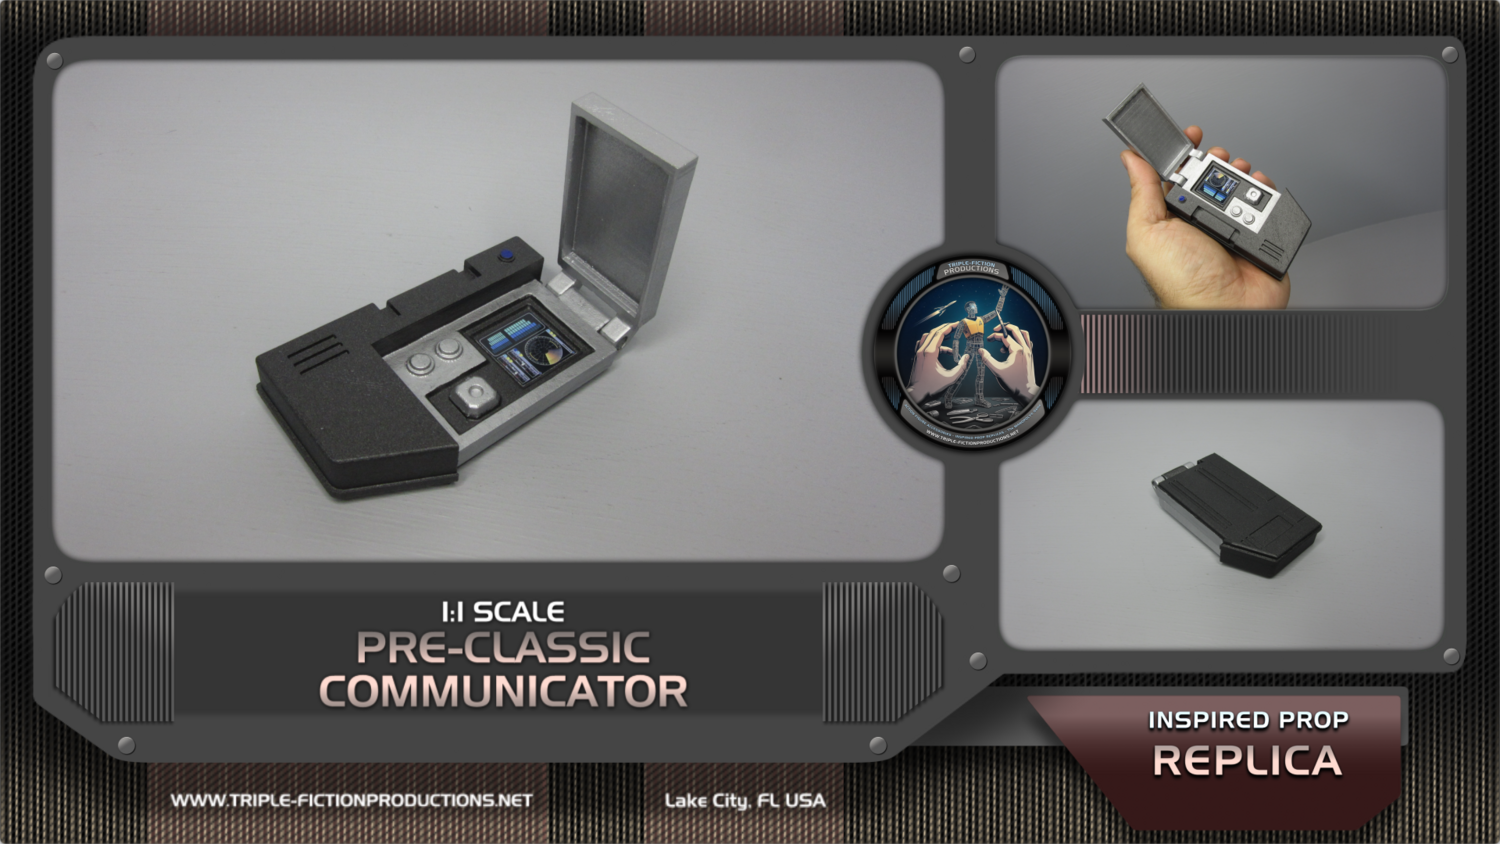 1:1 Scale - Prop Replica - Pre-Classic Communicator